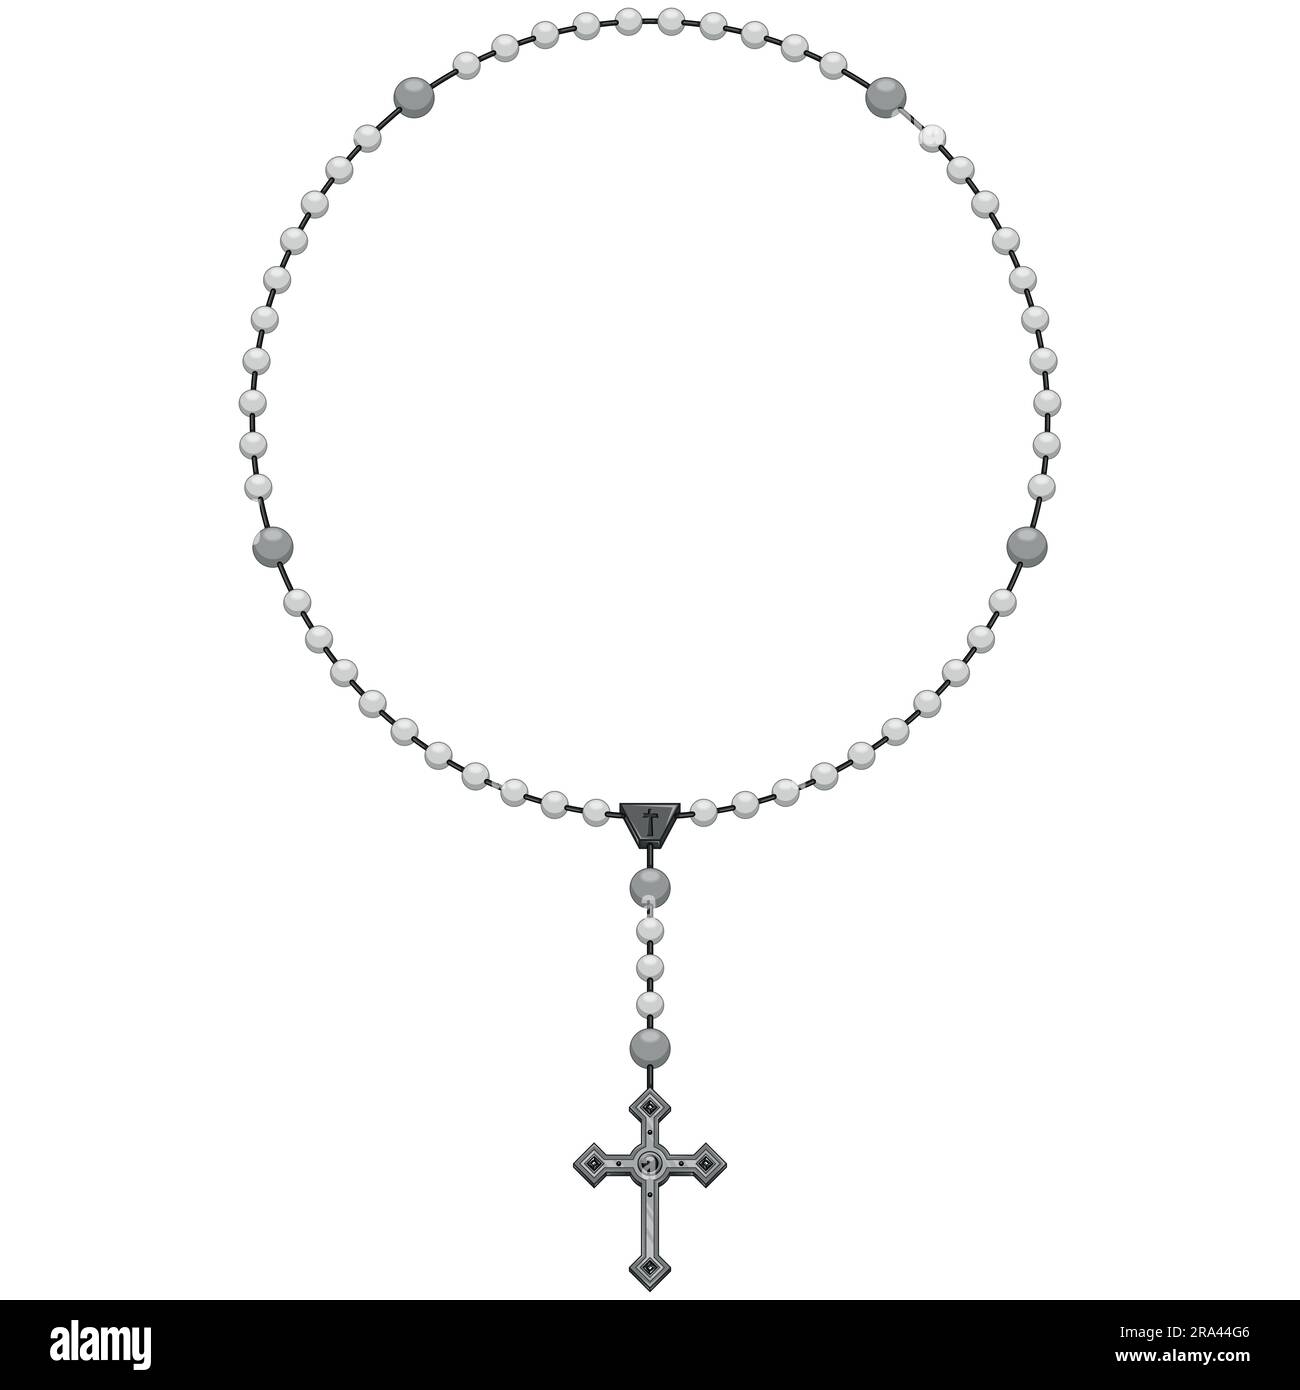 Dessin vectoriel de rosaire avec croix chrétienne, symbole de la religion catholique, rosaire avec une forme circulaire Illustration de Vecteur